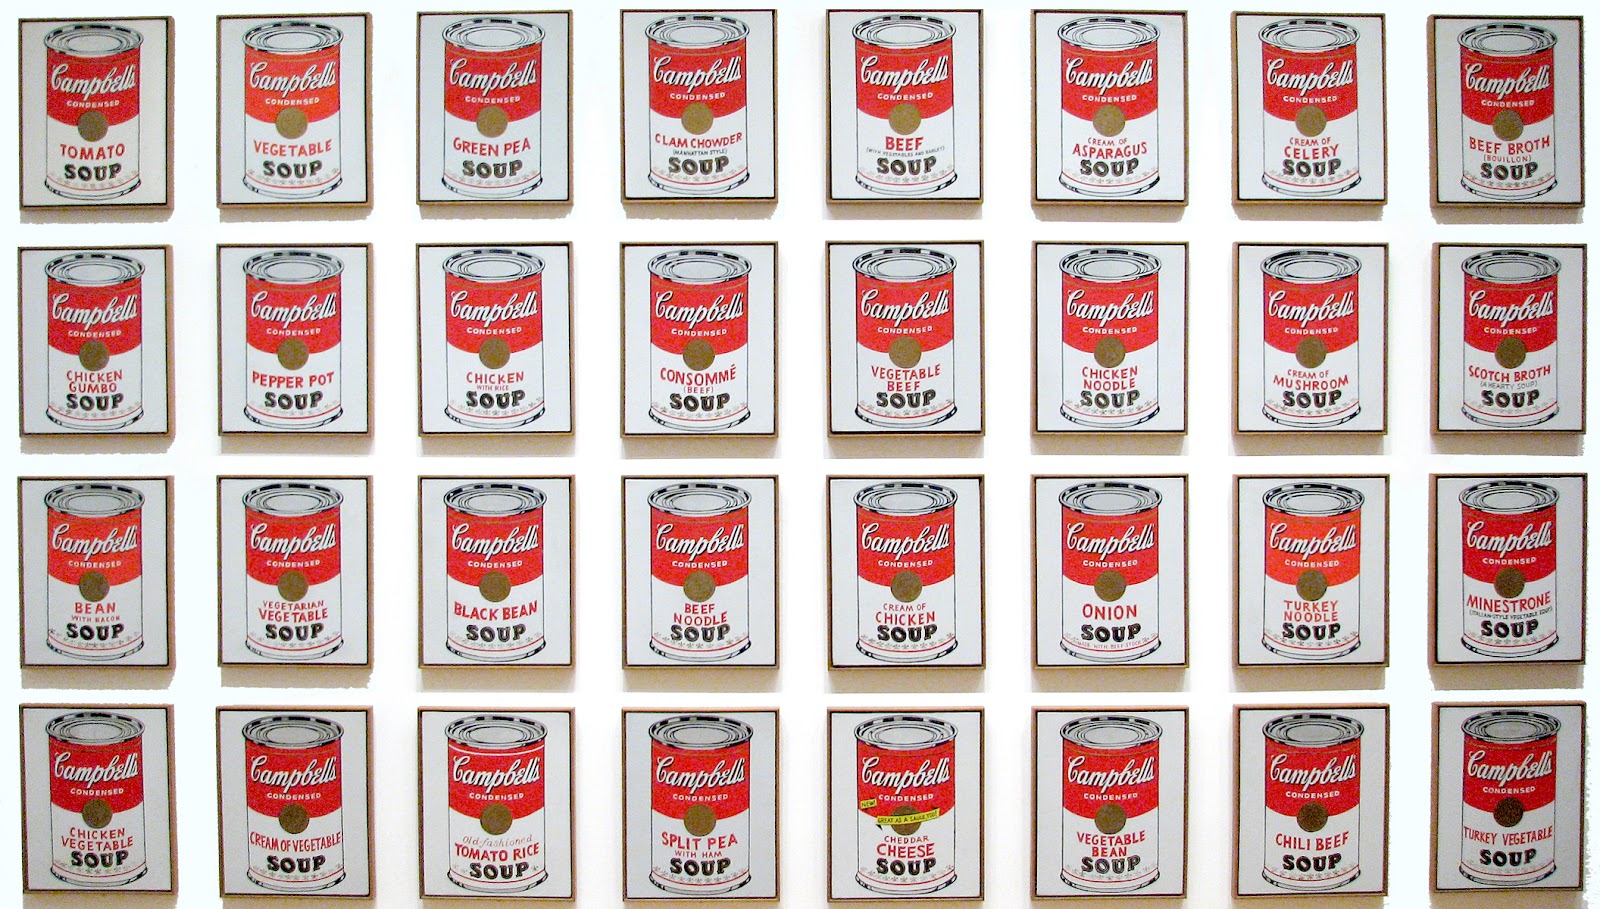 Puszki z zupą firmy Campbell by Andy Warhol - 1962 - 50.8 x 40.6 cm 